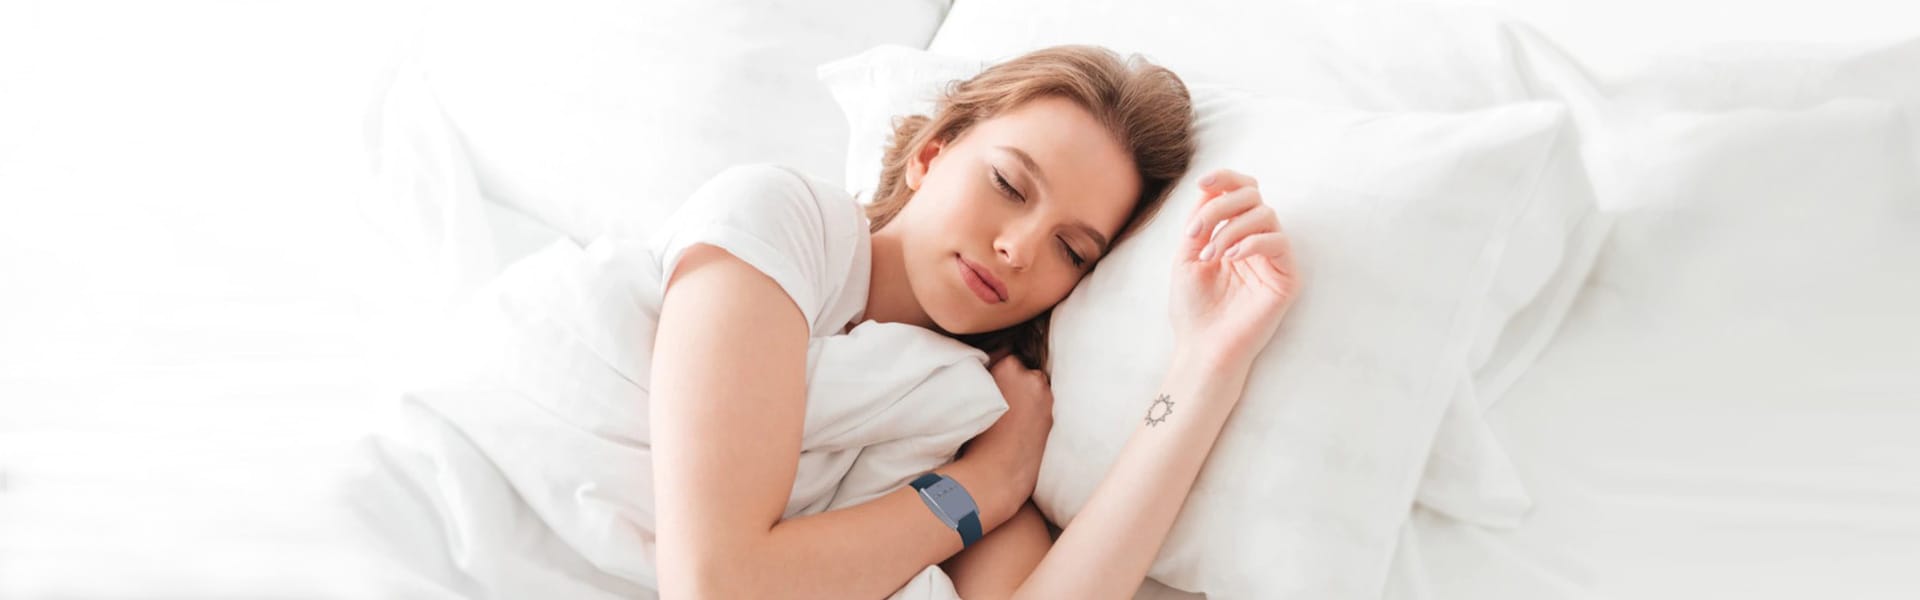 woman sleeping with fibion sleep device on the wrist